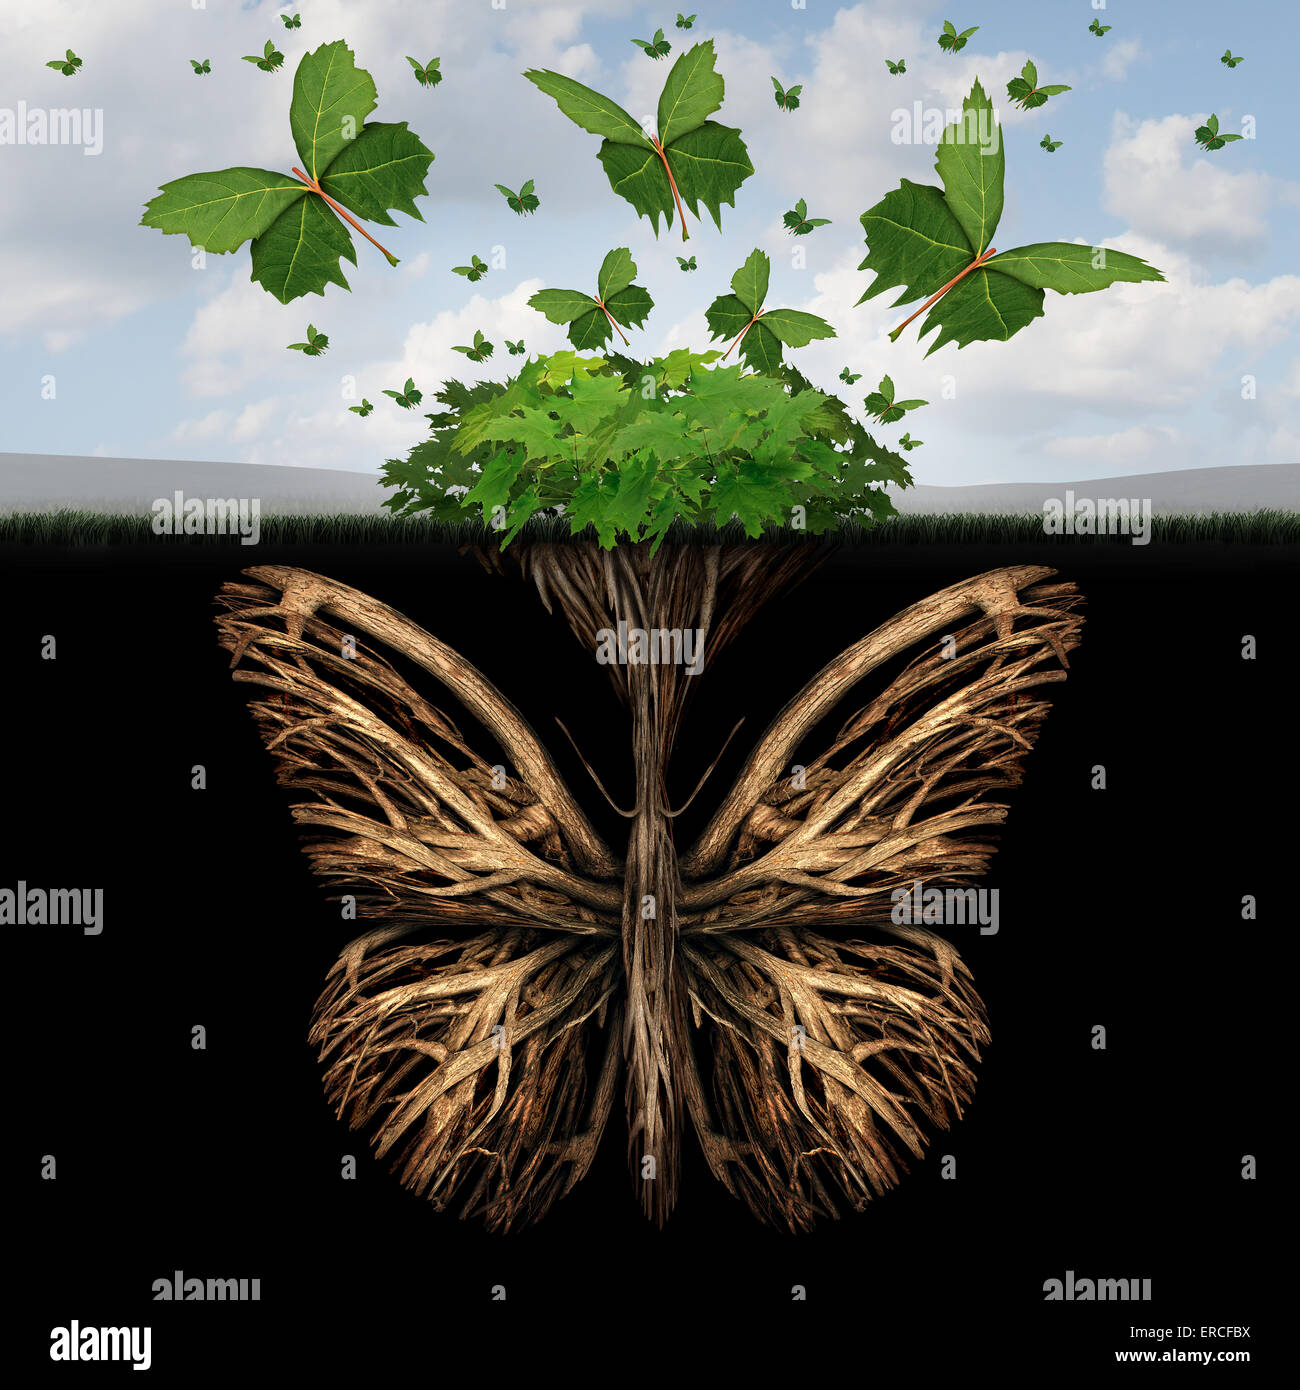 Starkes Fundament Konzept wie die Wurzeln einer Pflanze, geformt wie ein Schmetterling und die Blätter von einem Busch in der Form von fliegenden Schmetterlinge als eine kreative Basis-Symbol und die Kraft der Freiheit und Phantasie. Stockfoto